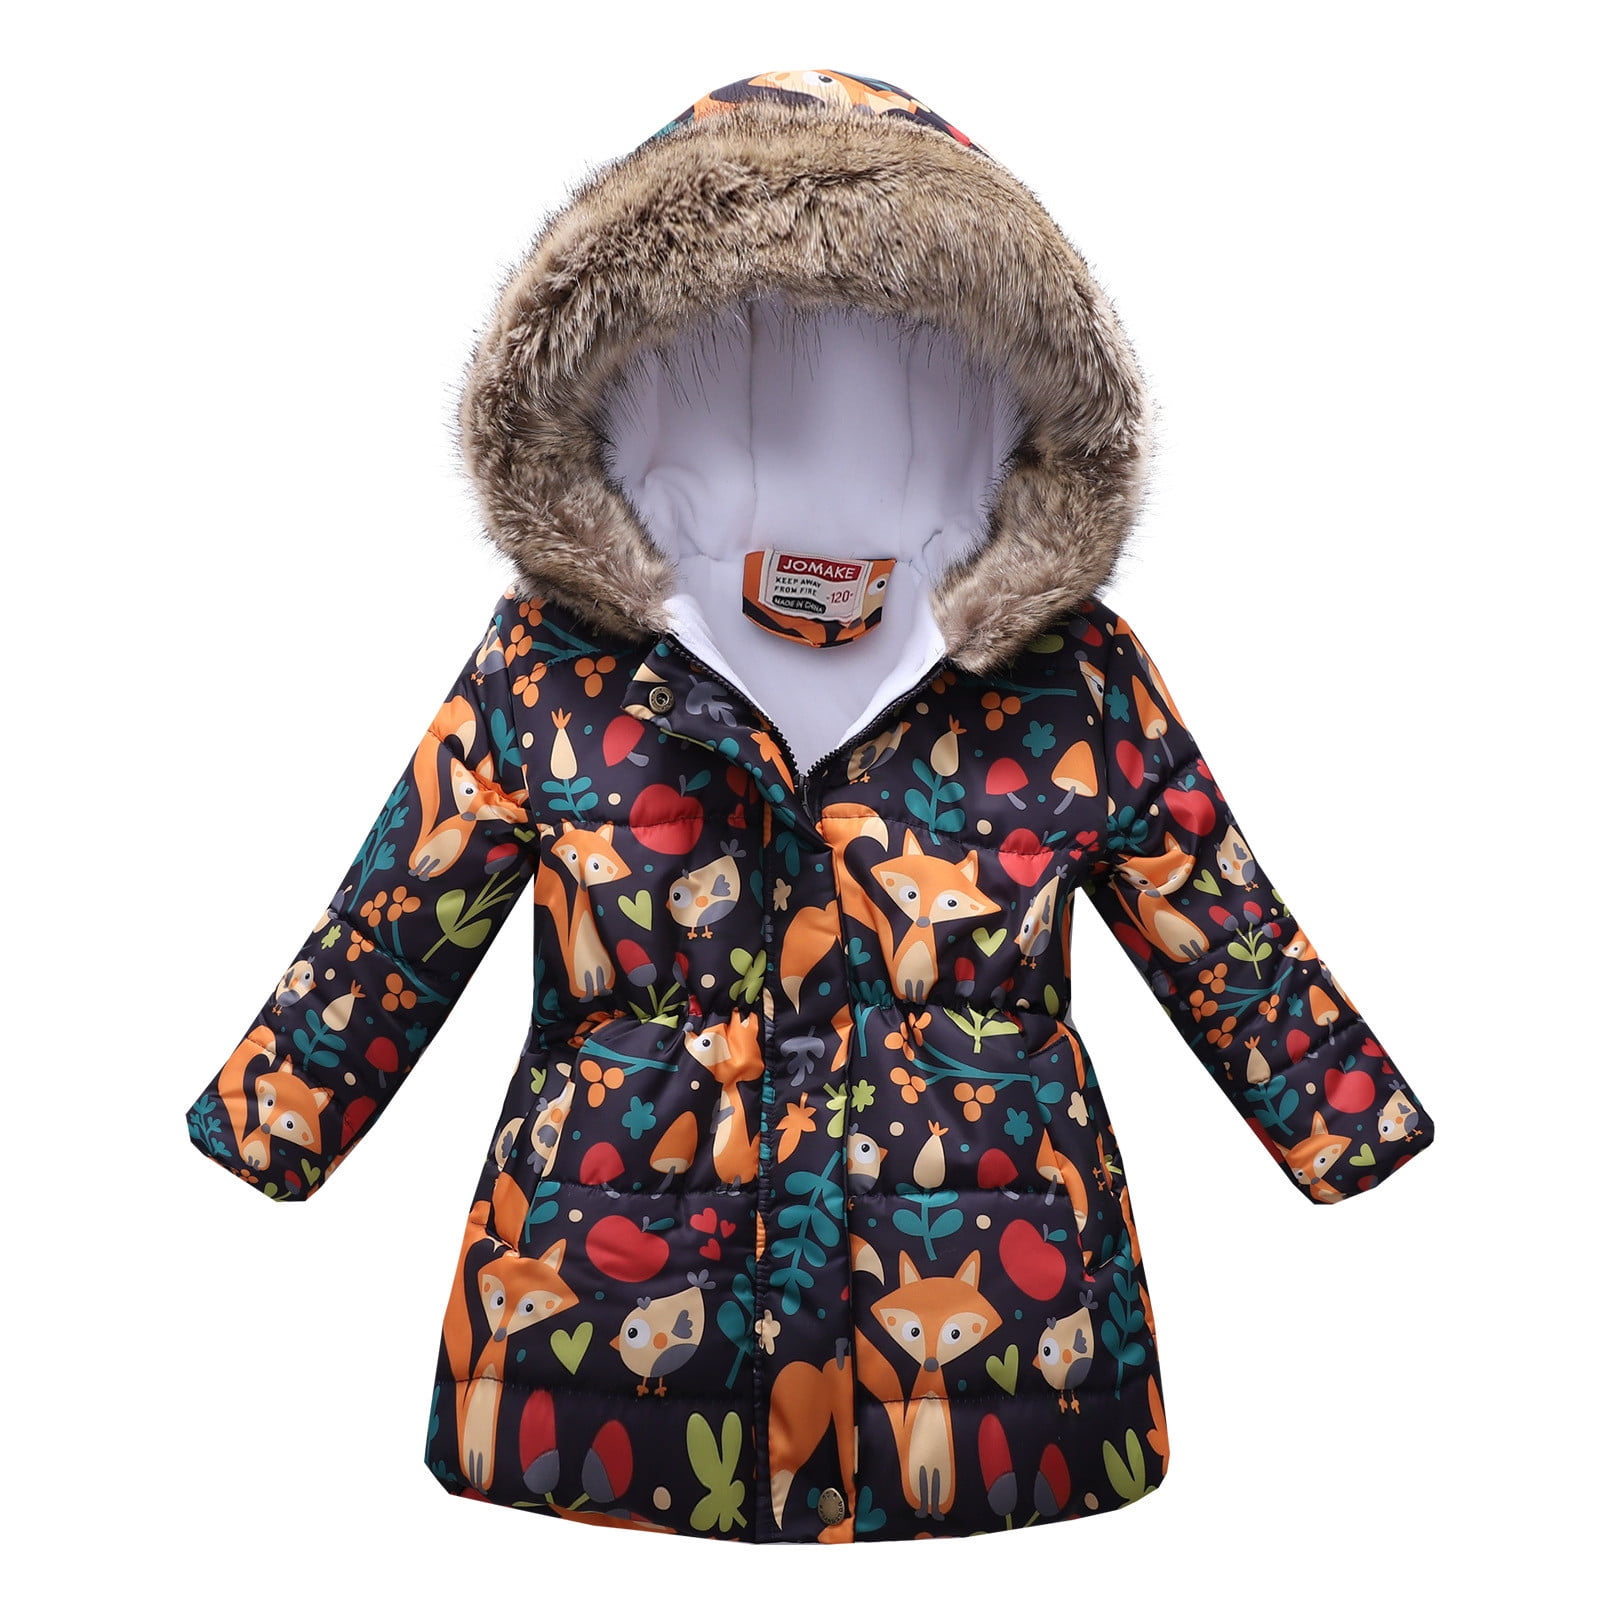 Toddler Baby Boys Girls Winter Cartoon Windproof Coat Hooded Warm Outwear Jacket 